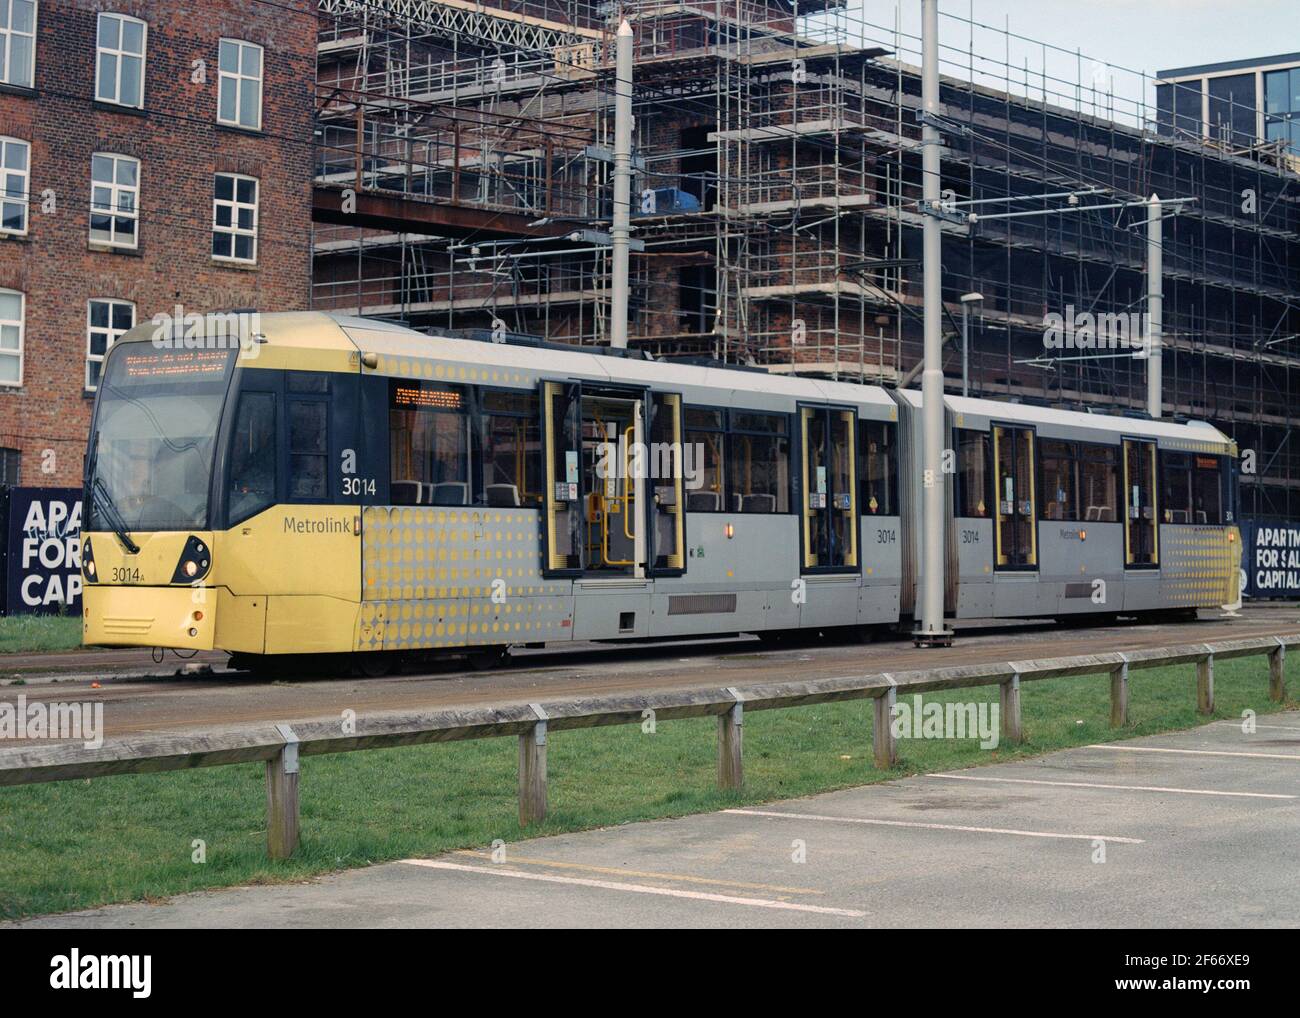 Manchester, Großbritannien - September 2020: Eine Metrolink-Straßenbahn (Bombardier M5000 ) am Straßengleis in der Nähe des Bahnhofs Manchester Piccadilly. Stockfoto